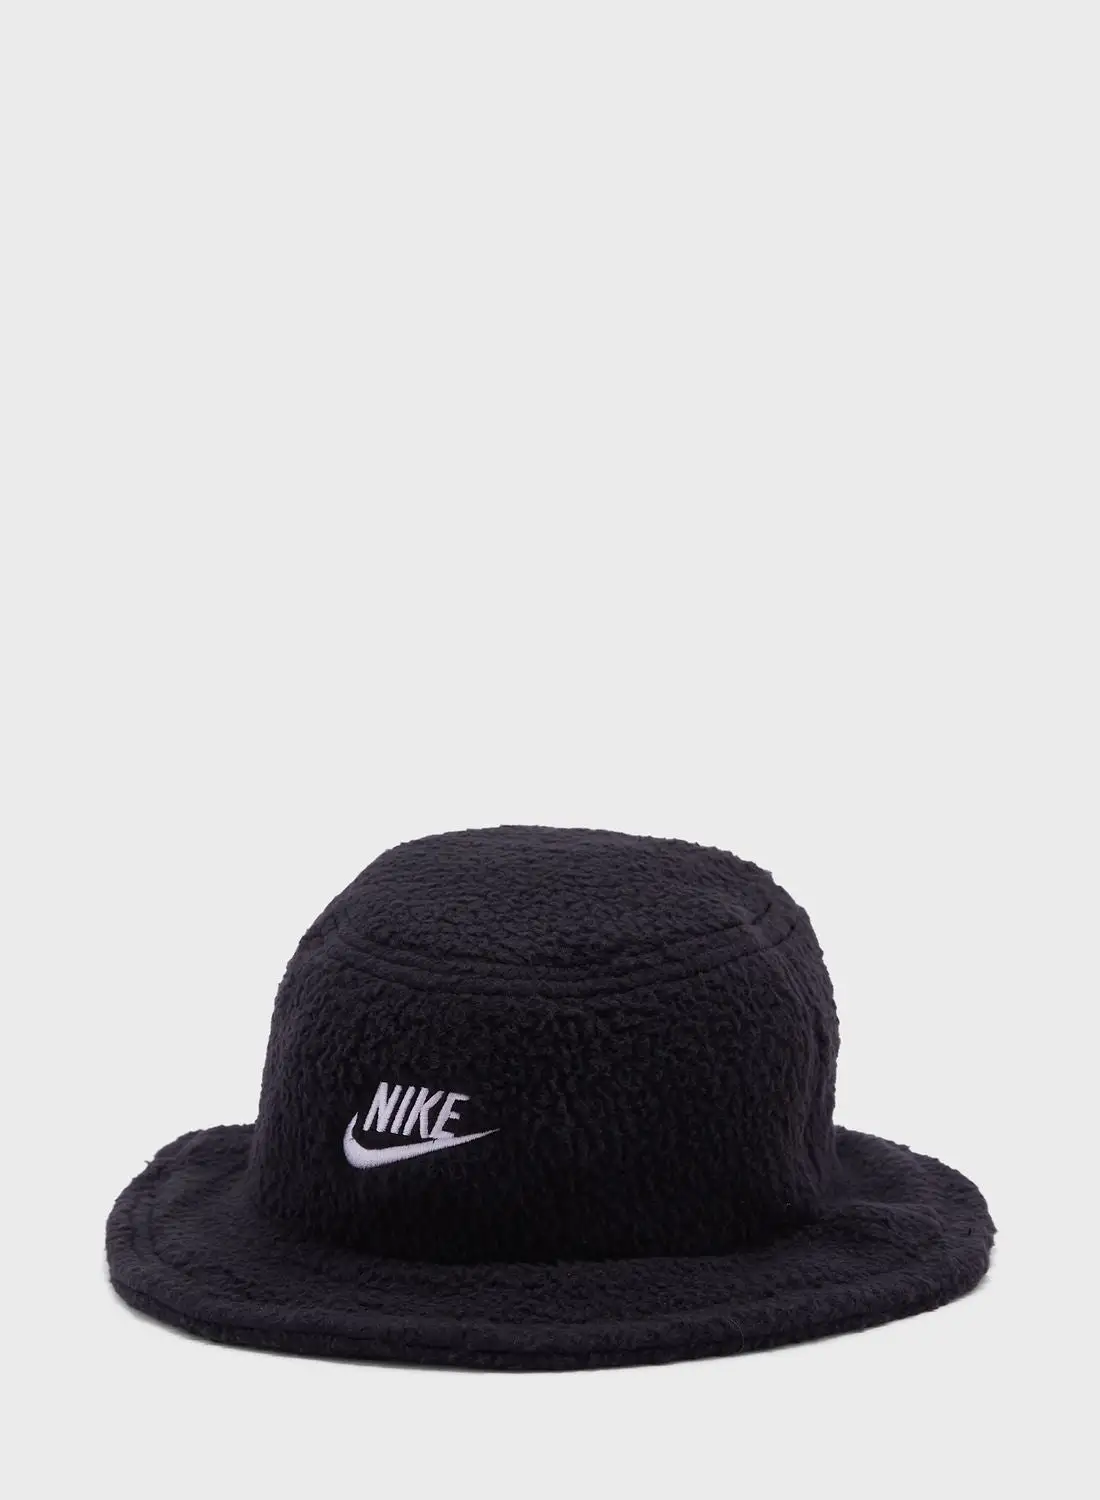 Nike Apex Bucket Outdoor Hat